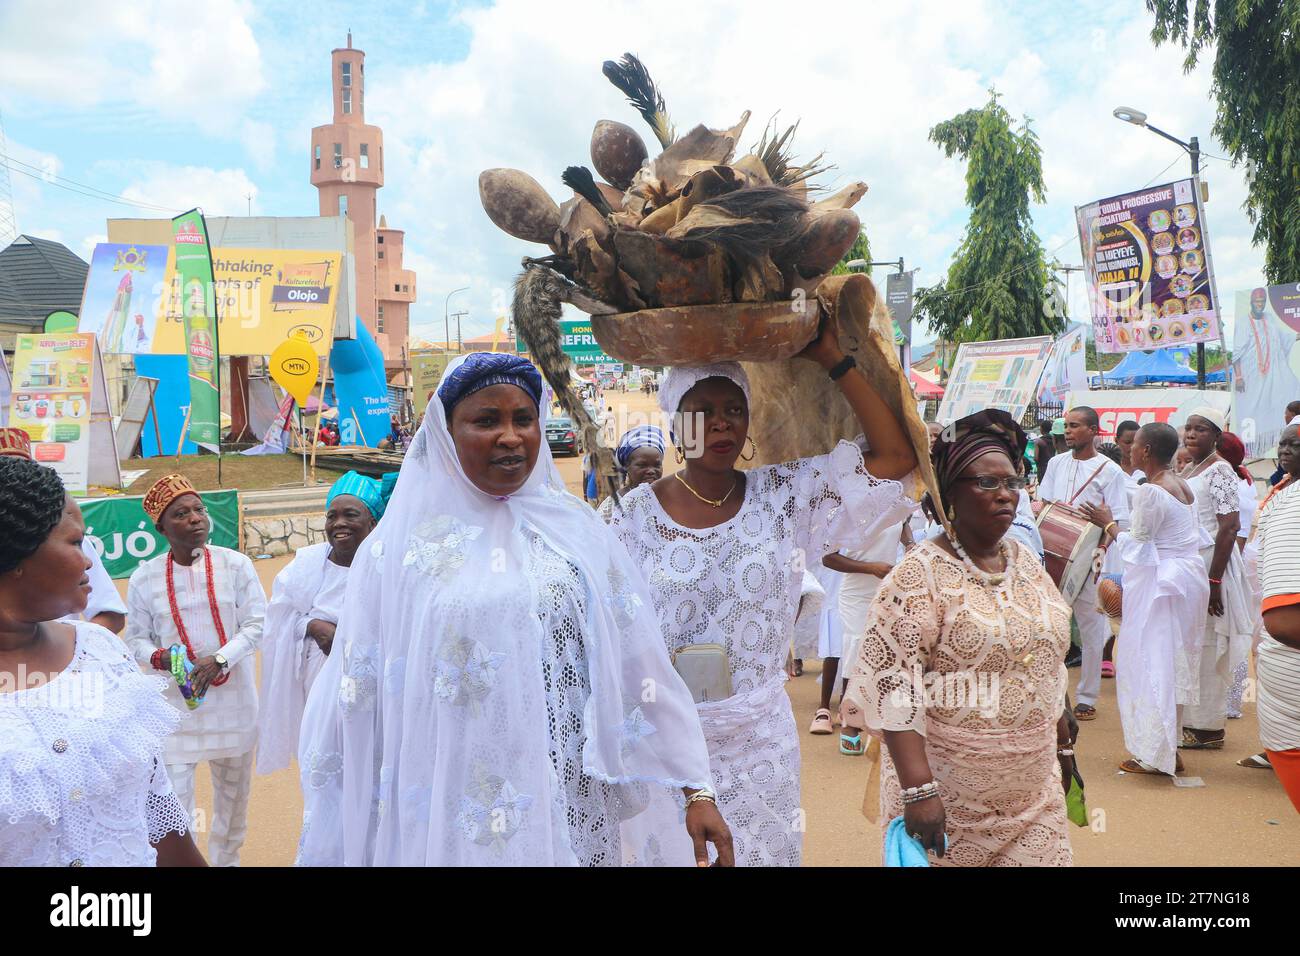 Die Besucher kommen zusammen, um das Olojo Festival in Ile-Ife im Bundesstaat Osun zu beobachten. Das Olojo-Festival ist eine Feier von Ogun, dem Gott von Eisen, und erinnert an den Abstieg von Oduduwa zur Ile-Ife, die Feier des ersten Sonnenaufgangs, des ersten Nachmittags und der ersten Nacht der Schöpfung. Das Olojo-Festival ist eines der ältesten in Afrika, das im ganzen Yoruba-Land gefeiert wird. Es feiert den Beginn des ersten Tages der Existenz auf der Erde, wo der Monarch die heilige Krone trägt, die größere Bedeutung bei der Olojo-Feier in Nigeria hat. Stockfoto